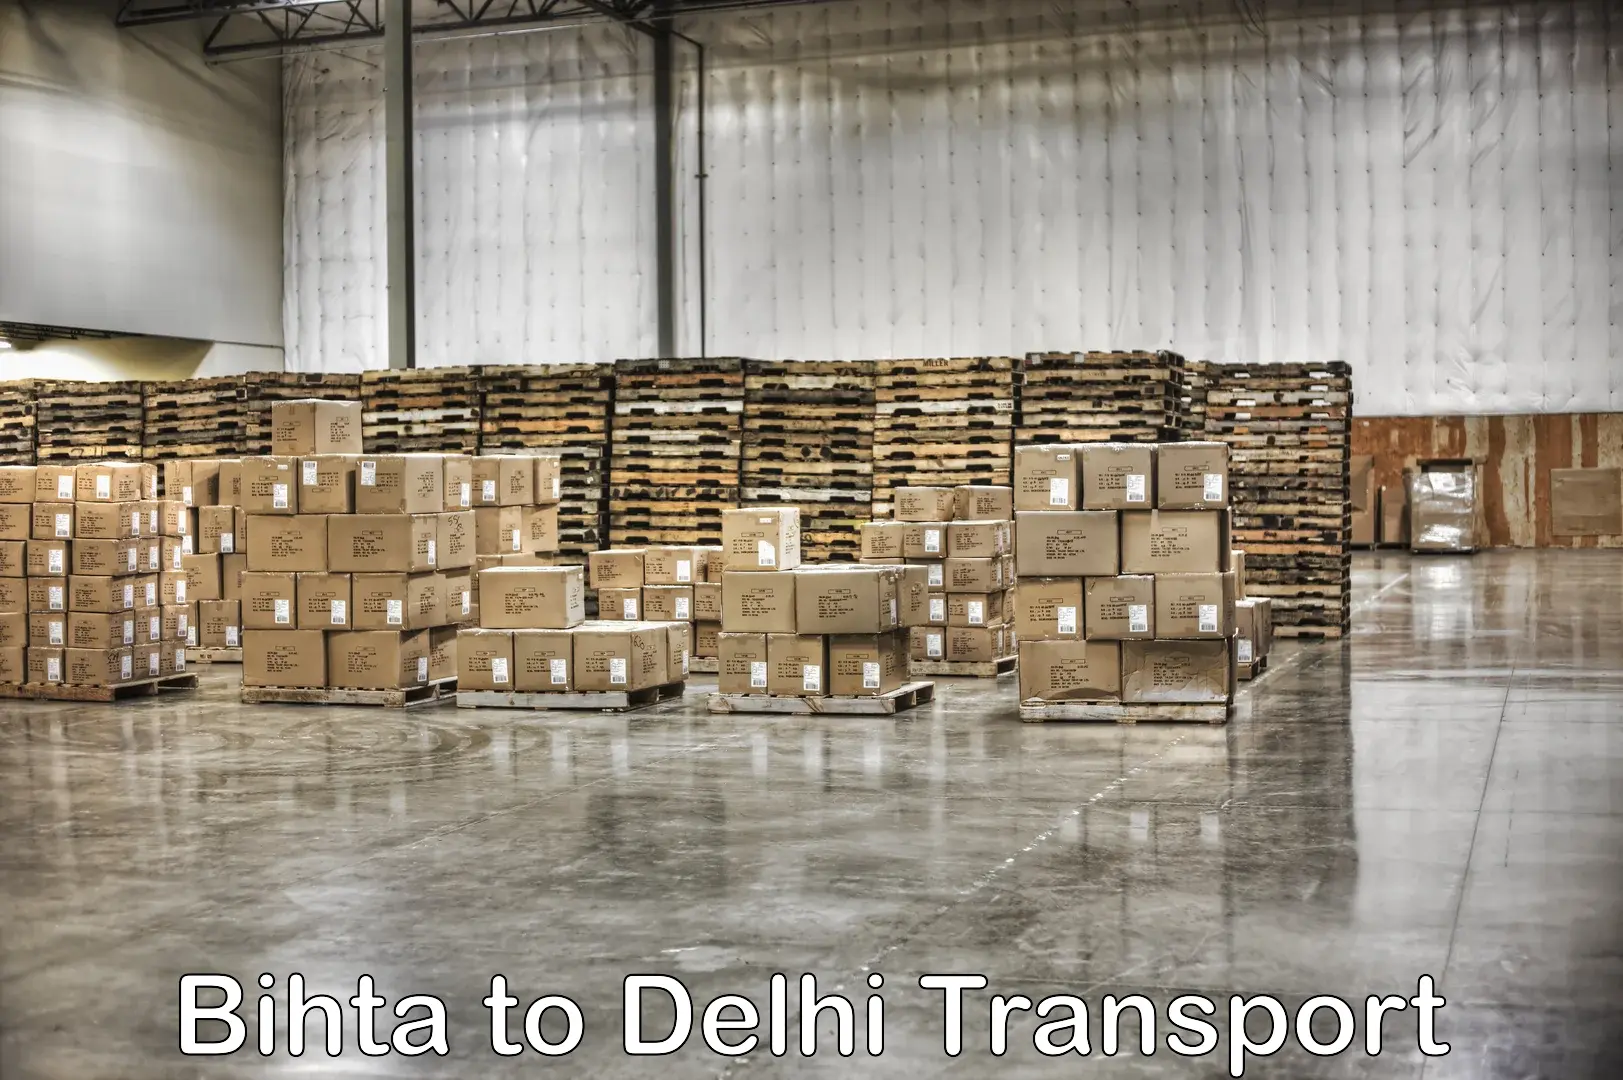 Interstate transport services Bihta to IIT Delhi